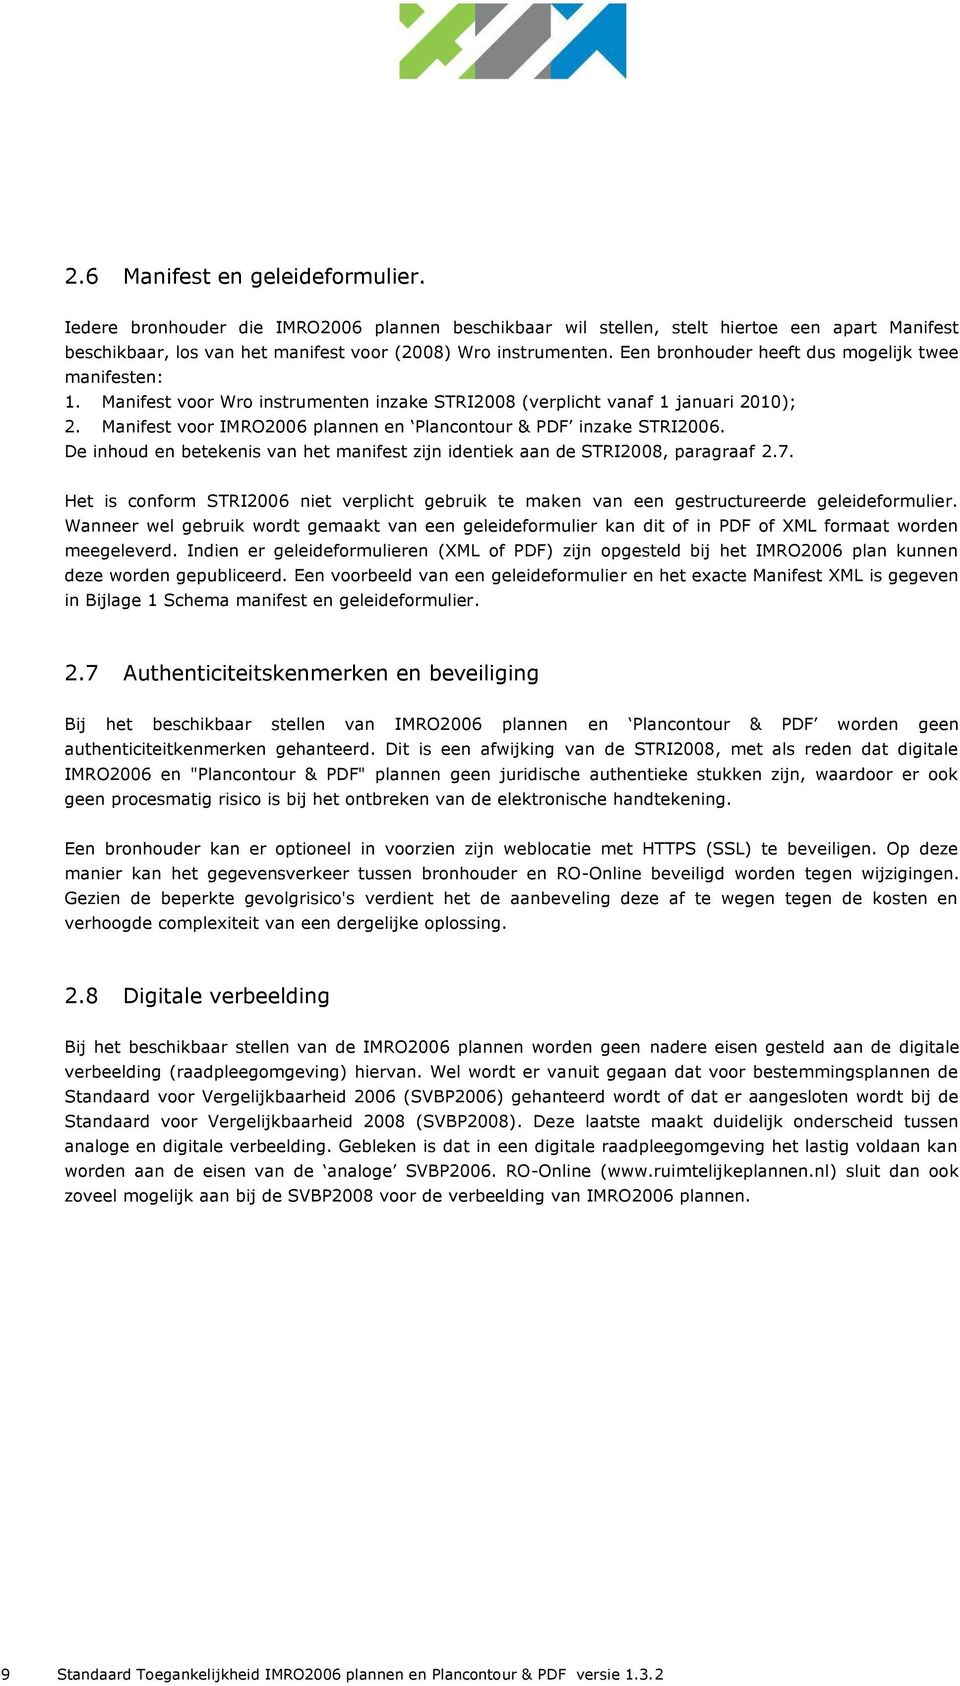 Manifest voor IMRO2006 plannen en Plancontour & PDF inzake STRI2006. De inhoud en betekenis van het manifest zijn identiek aan de STRI2008, paragraaf 2.7.